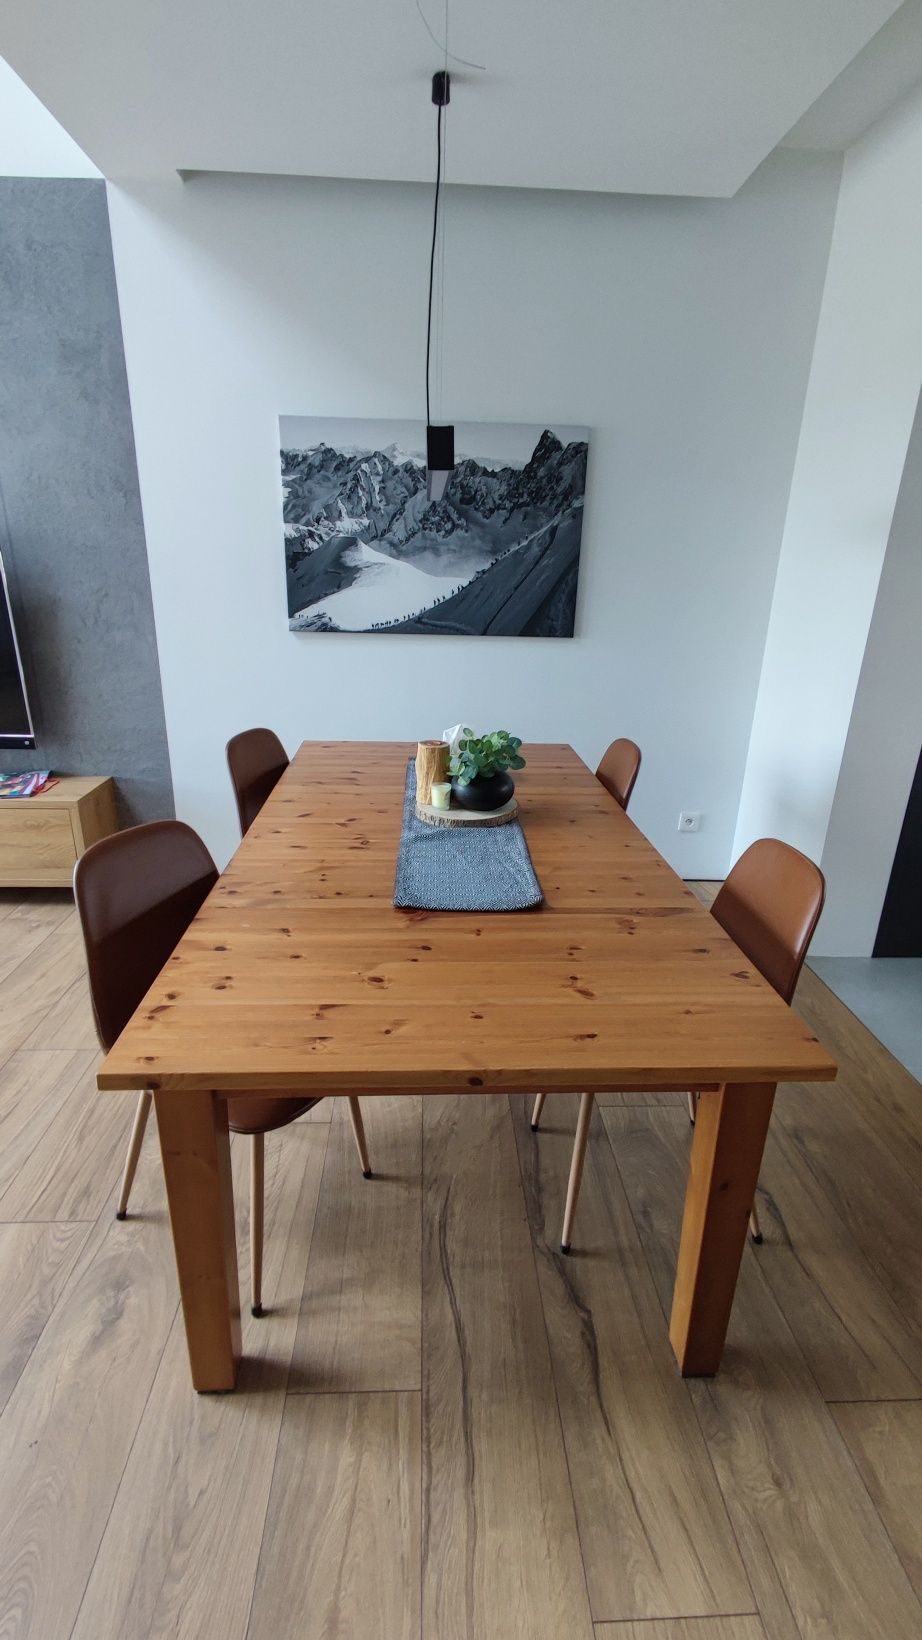 Stół Ikea stornas 205x105 + 2x50 305x105 + 4 krzesła Jysk Jonstrup